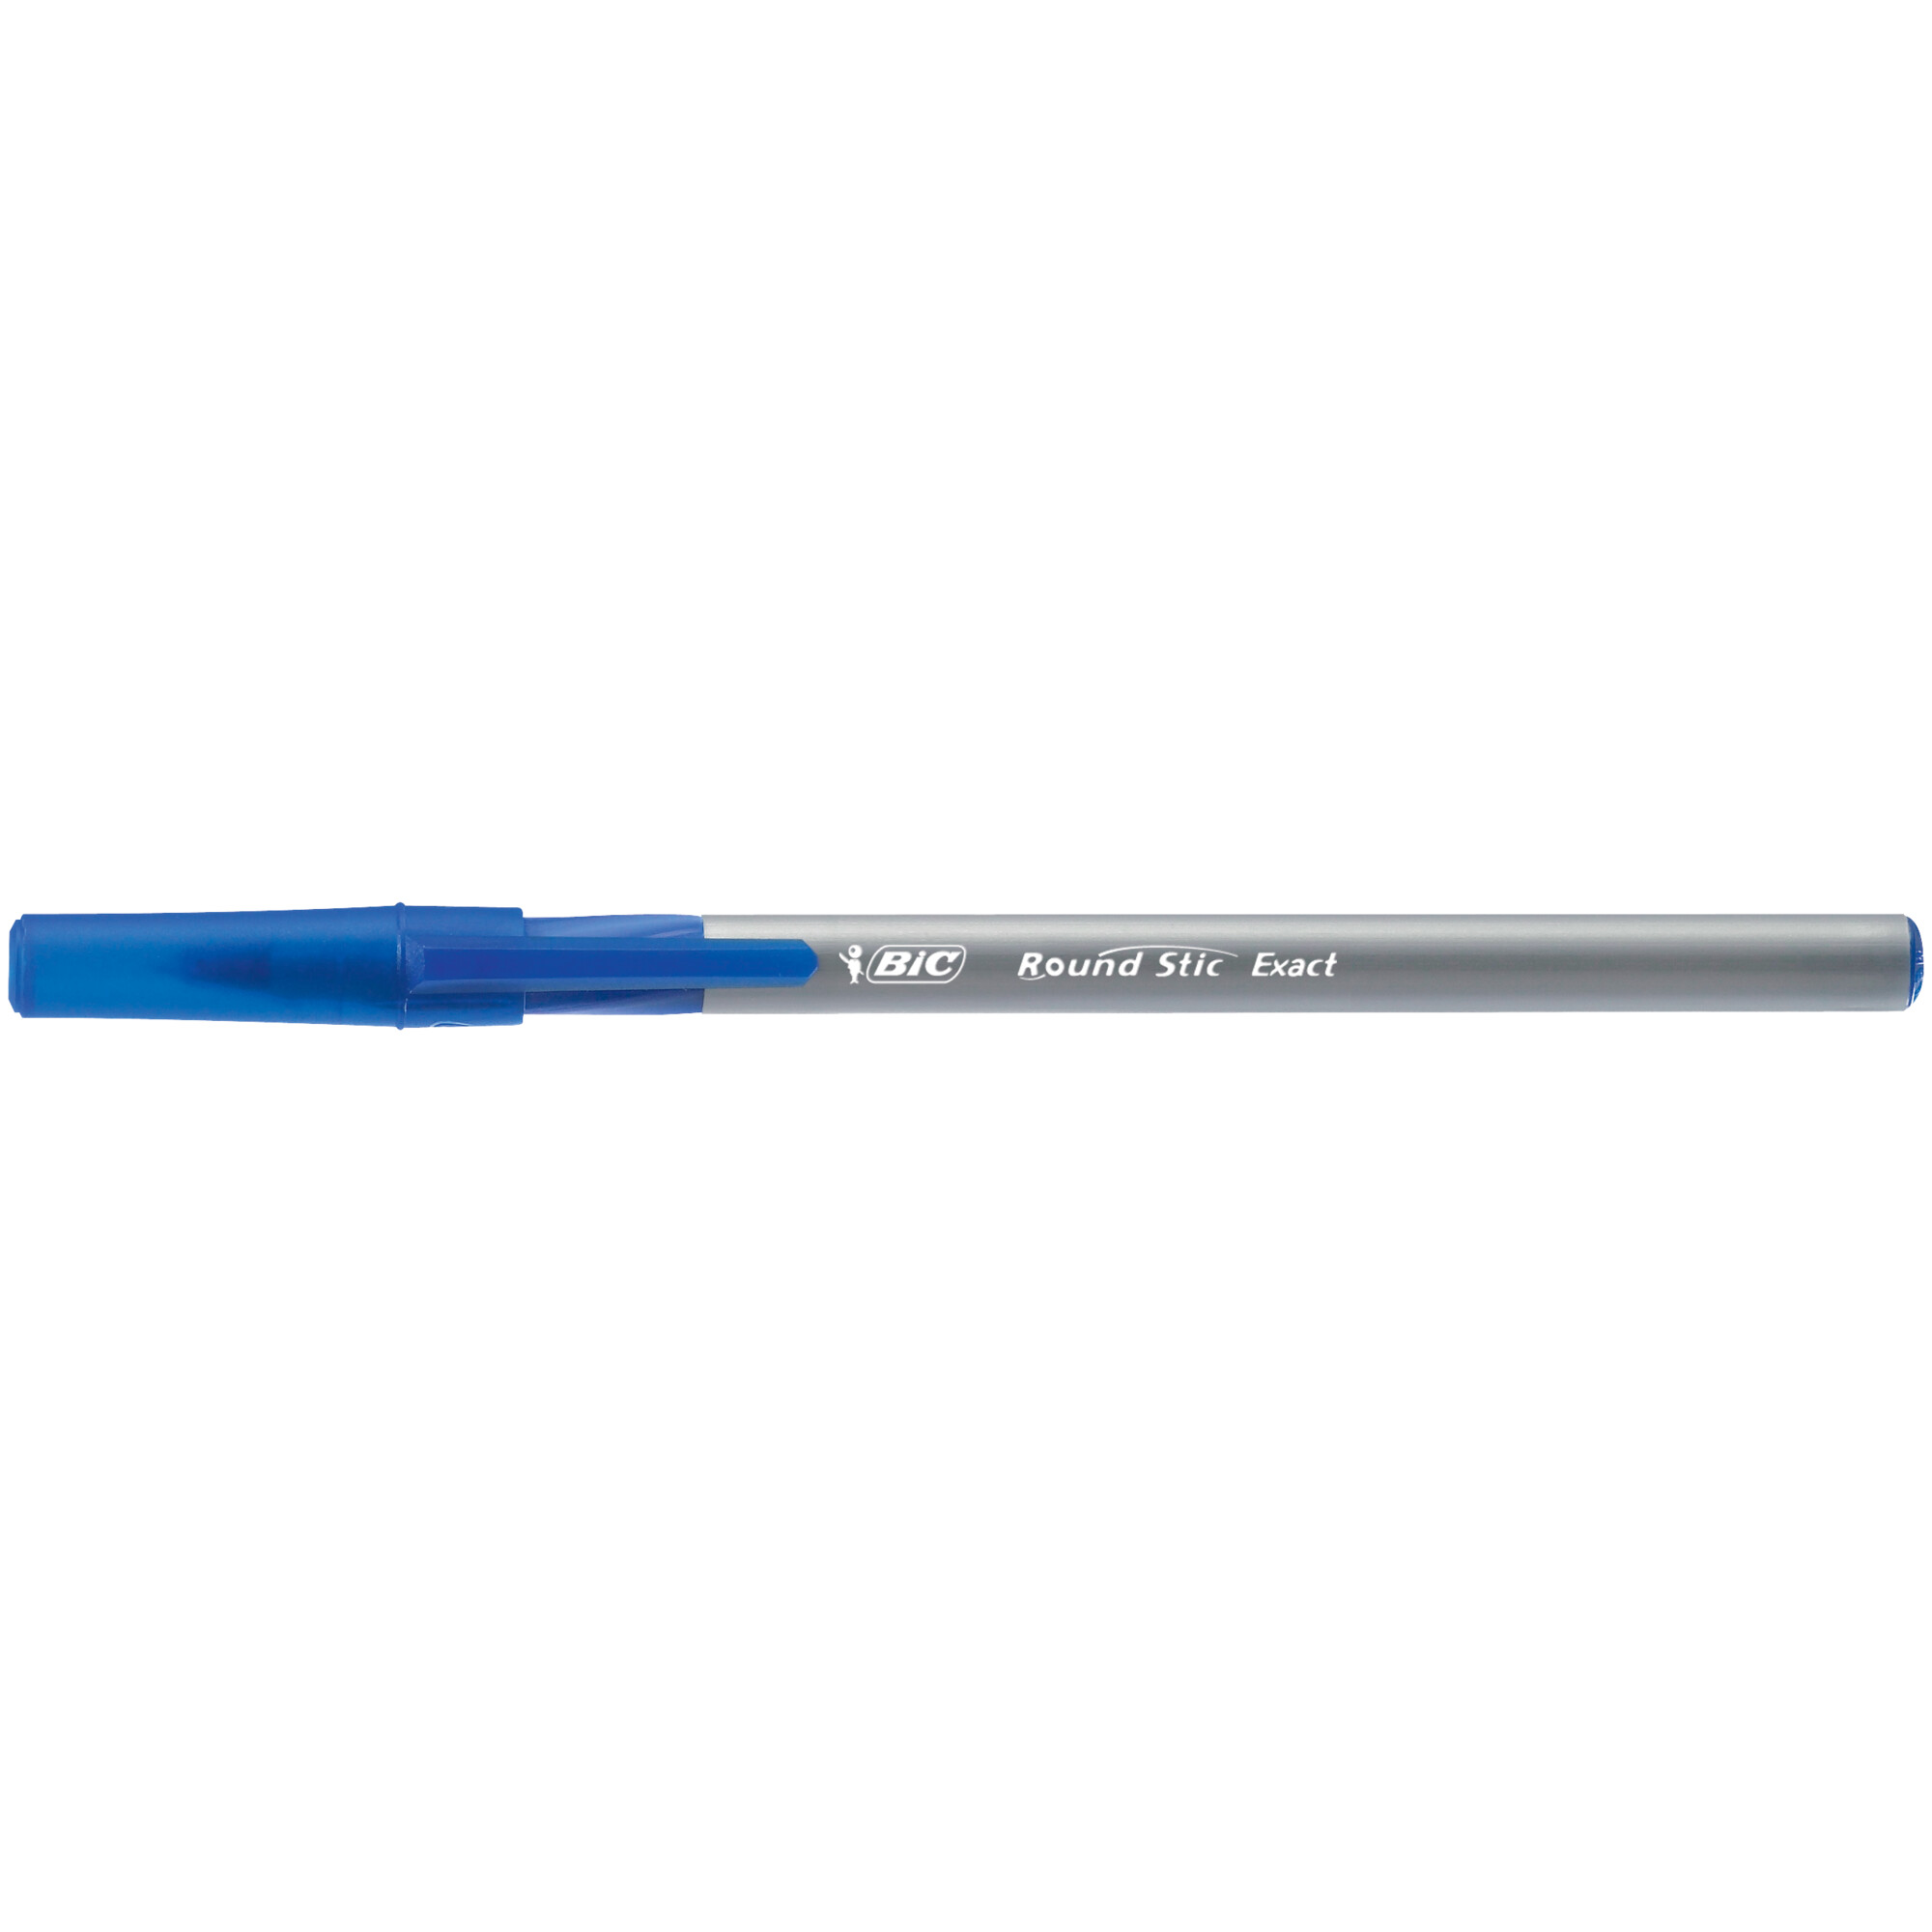 Round stic exact. Ручка шариковая неавтоматическая BIC раунд стик Экзакт синяя, 918543 0,28мм. Ручка шариковая BIC Round Stic exact, синяя, 035 мм. Ручка шариковая BIC "Round Stic" синяя, 1,0мм. Ручка шар 0,7мм BIC Round Stic exact синяя, арт. 1314672.